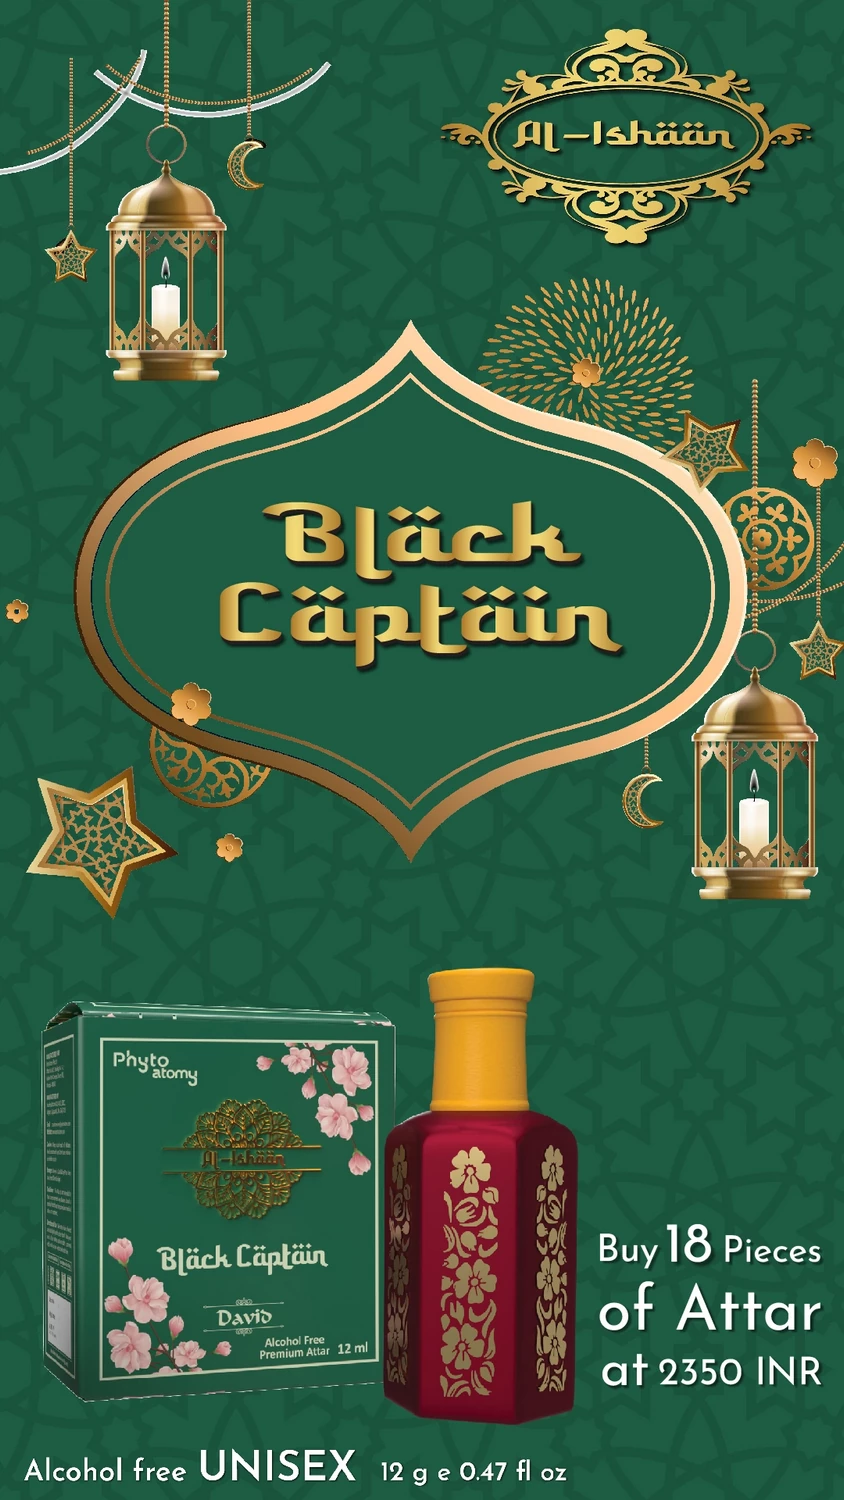 SCBV B2B Al Ishan Black Captain Attar (12ml)-18 Pcs.